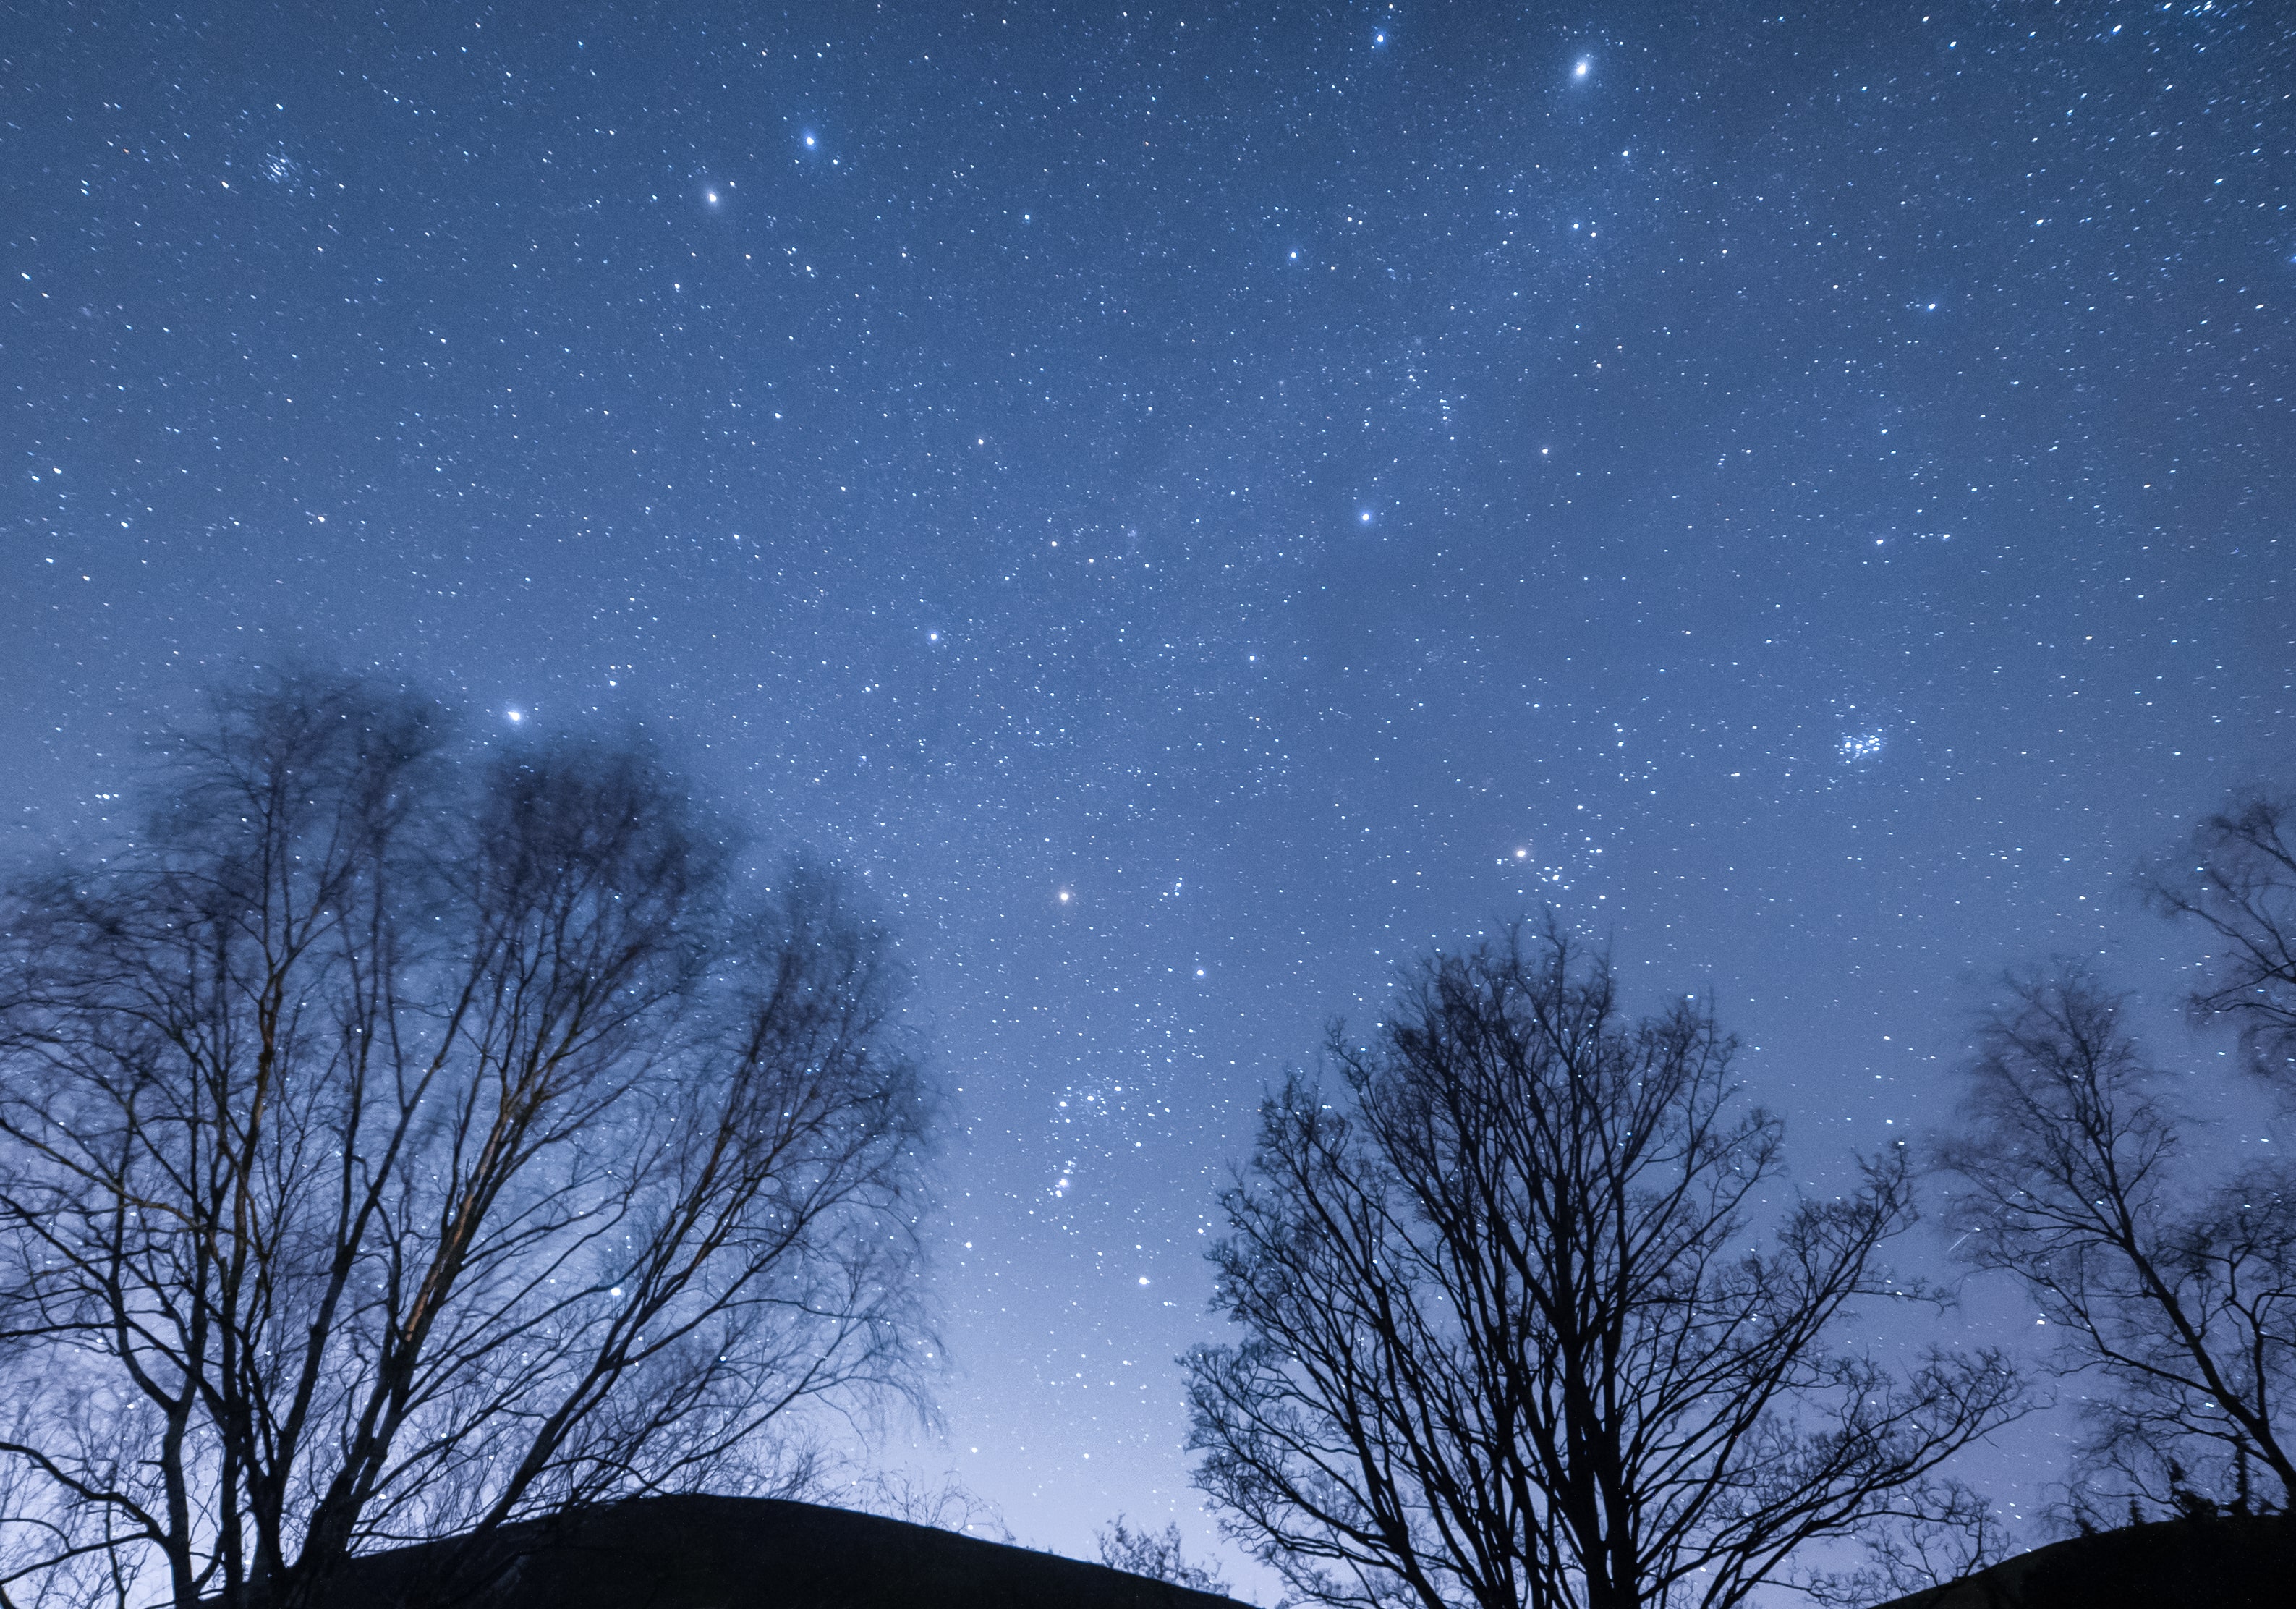 Bright stars in the winter night skies. 